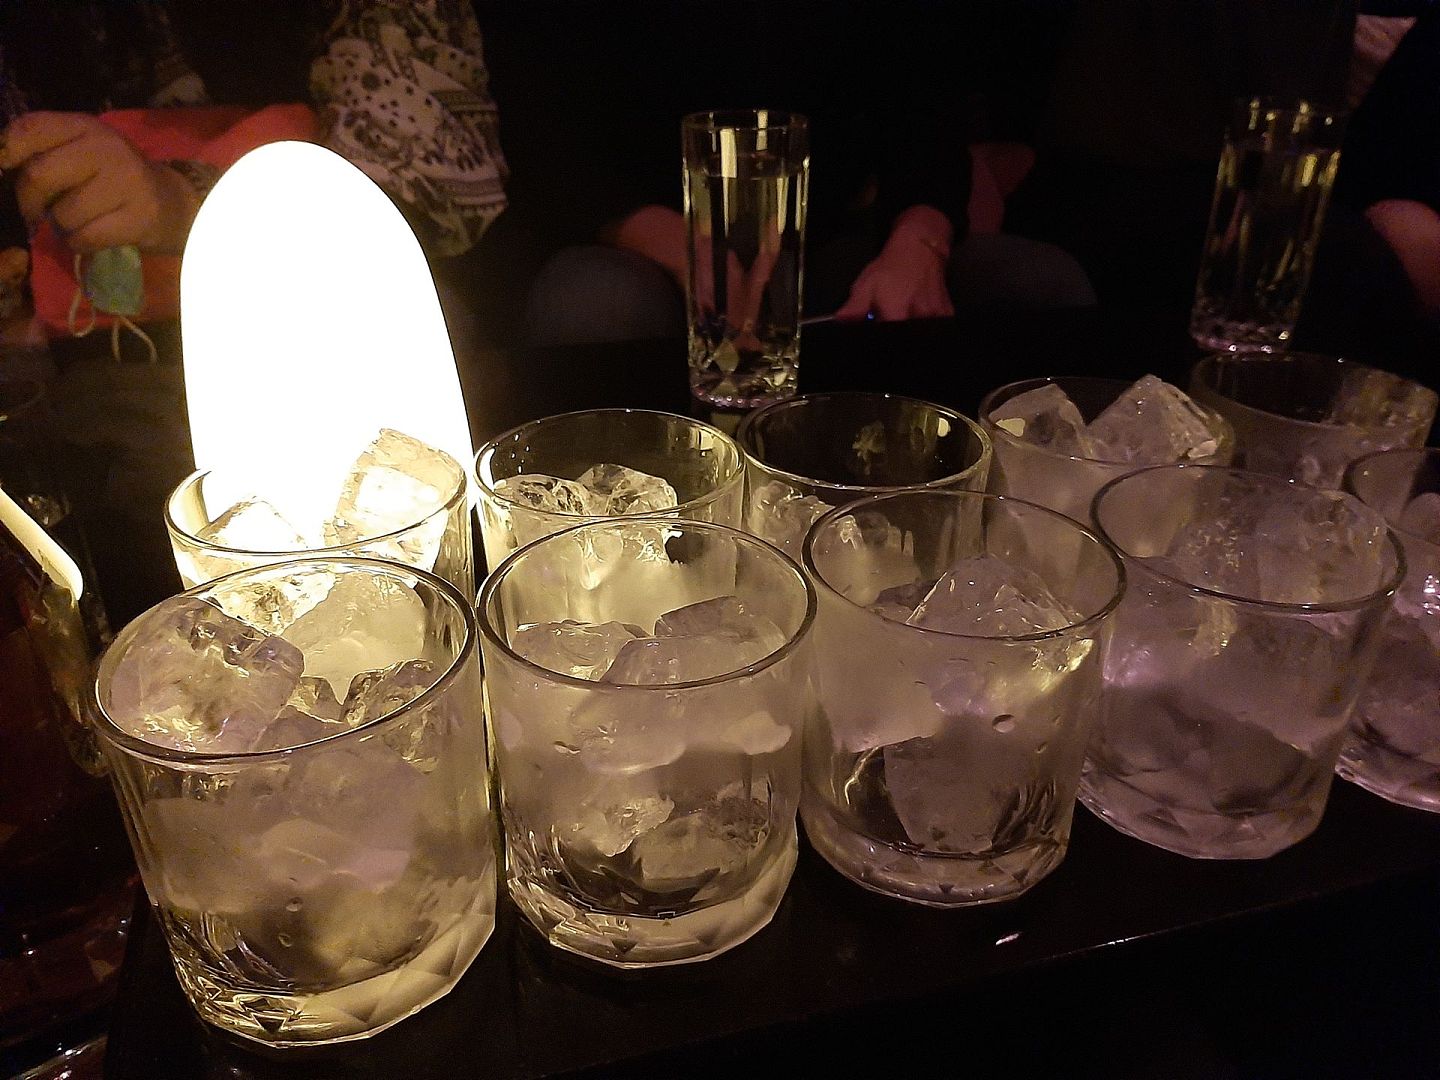 条通日式酒吧“Bar nine vip”内景，装满冰块的酒杯。（祁宾鸿／多维新闻）